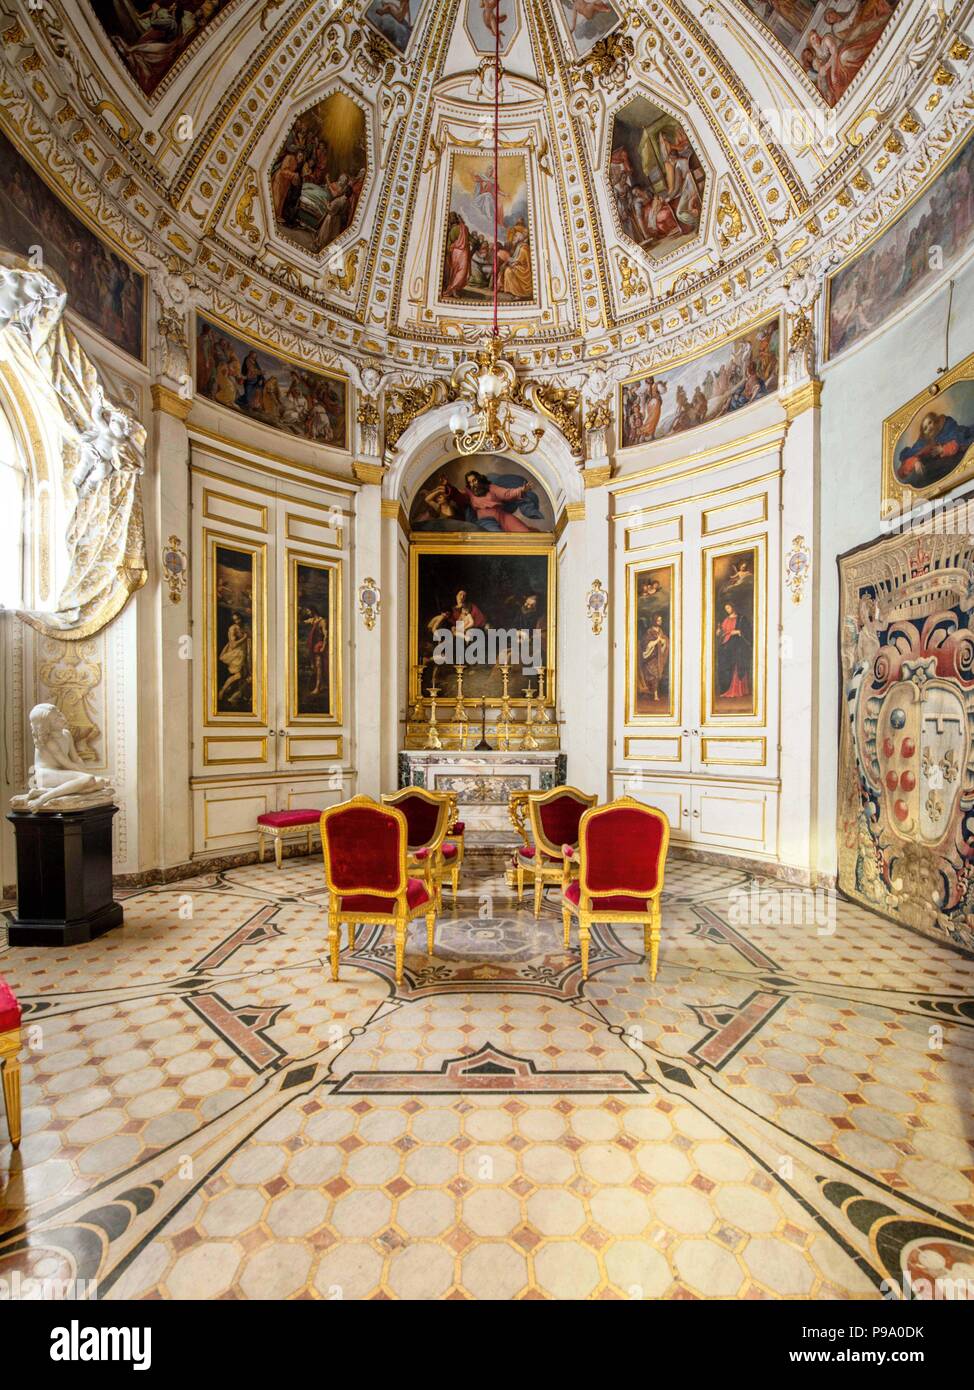 Palazzo Pitti Interior Stockfotos Palazzo Pitti Interior